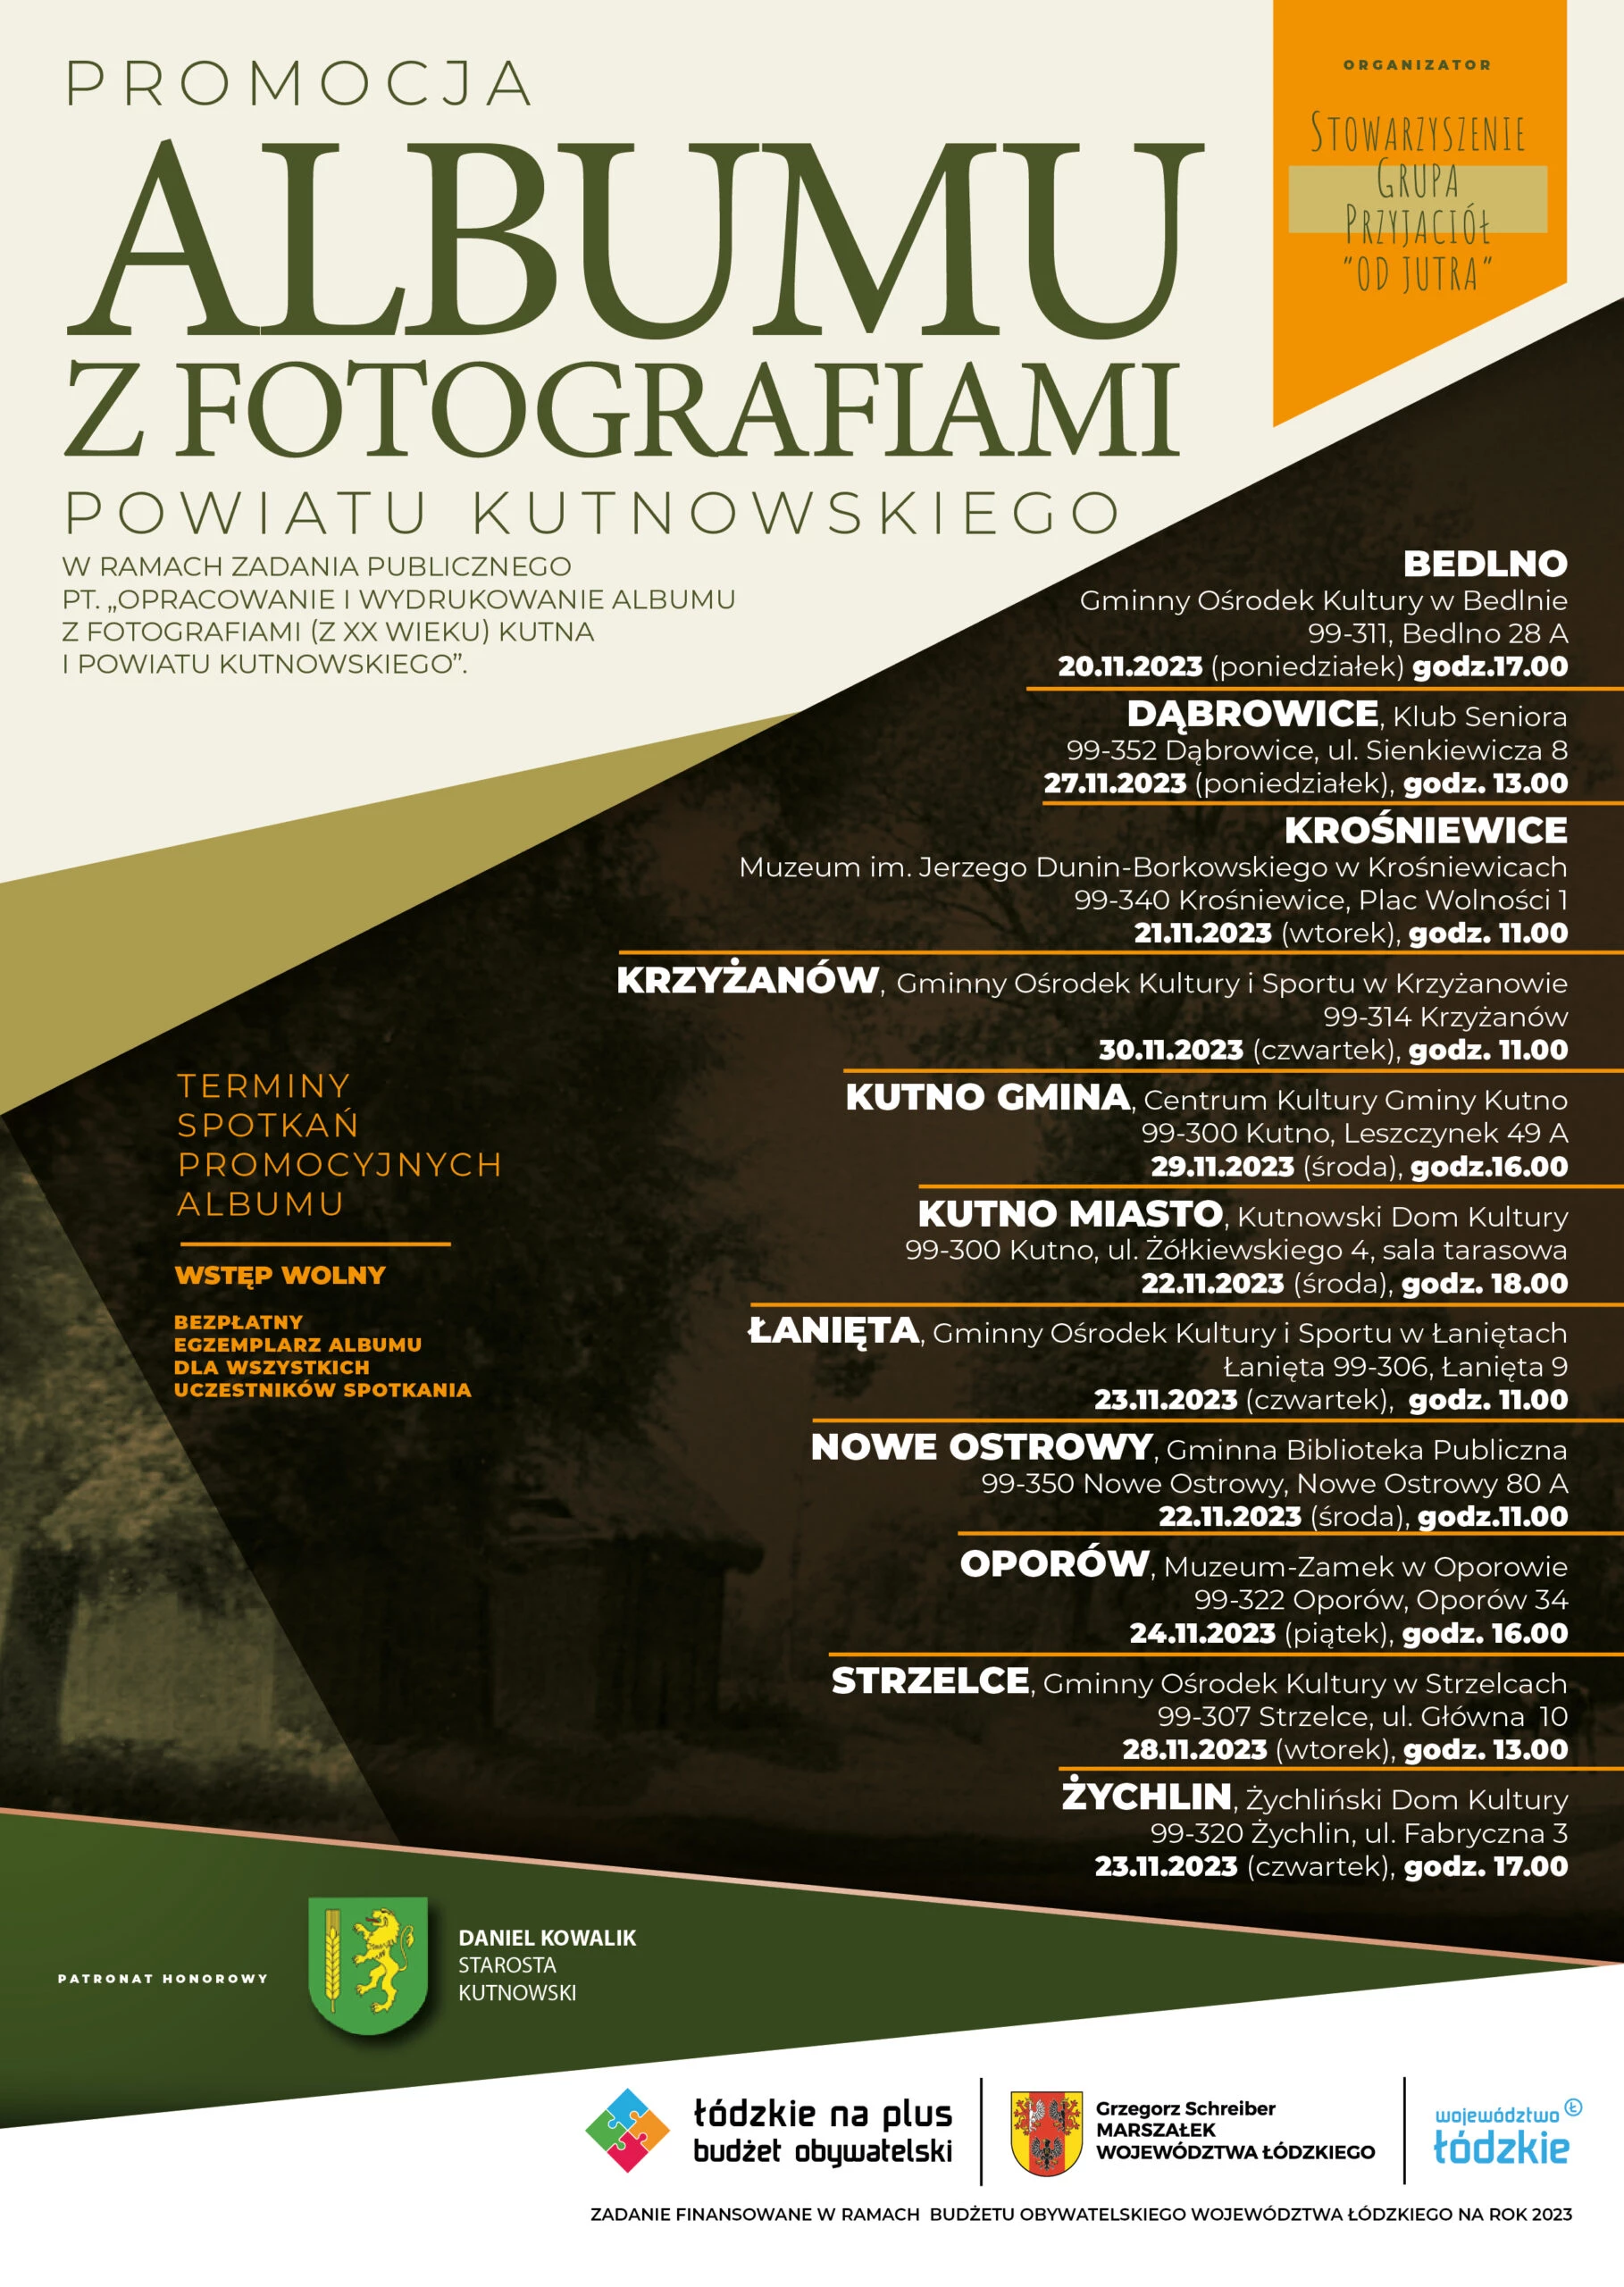 Promocja albumu z fotografiami Powiatu Kutnowskiego